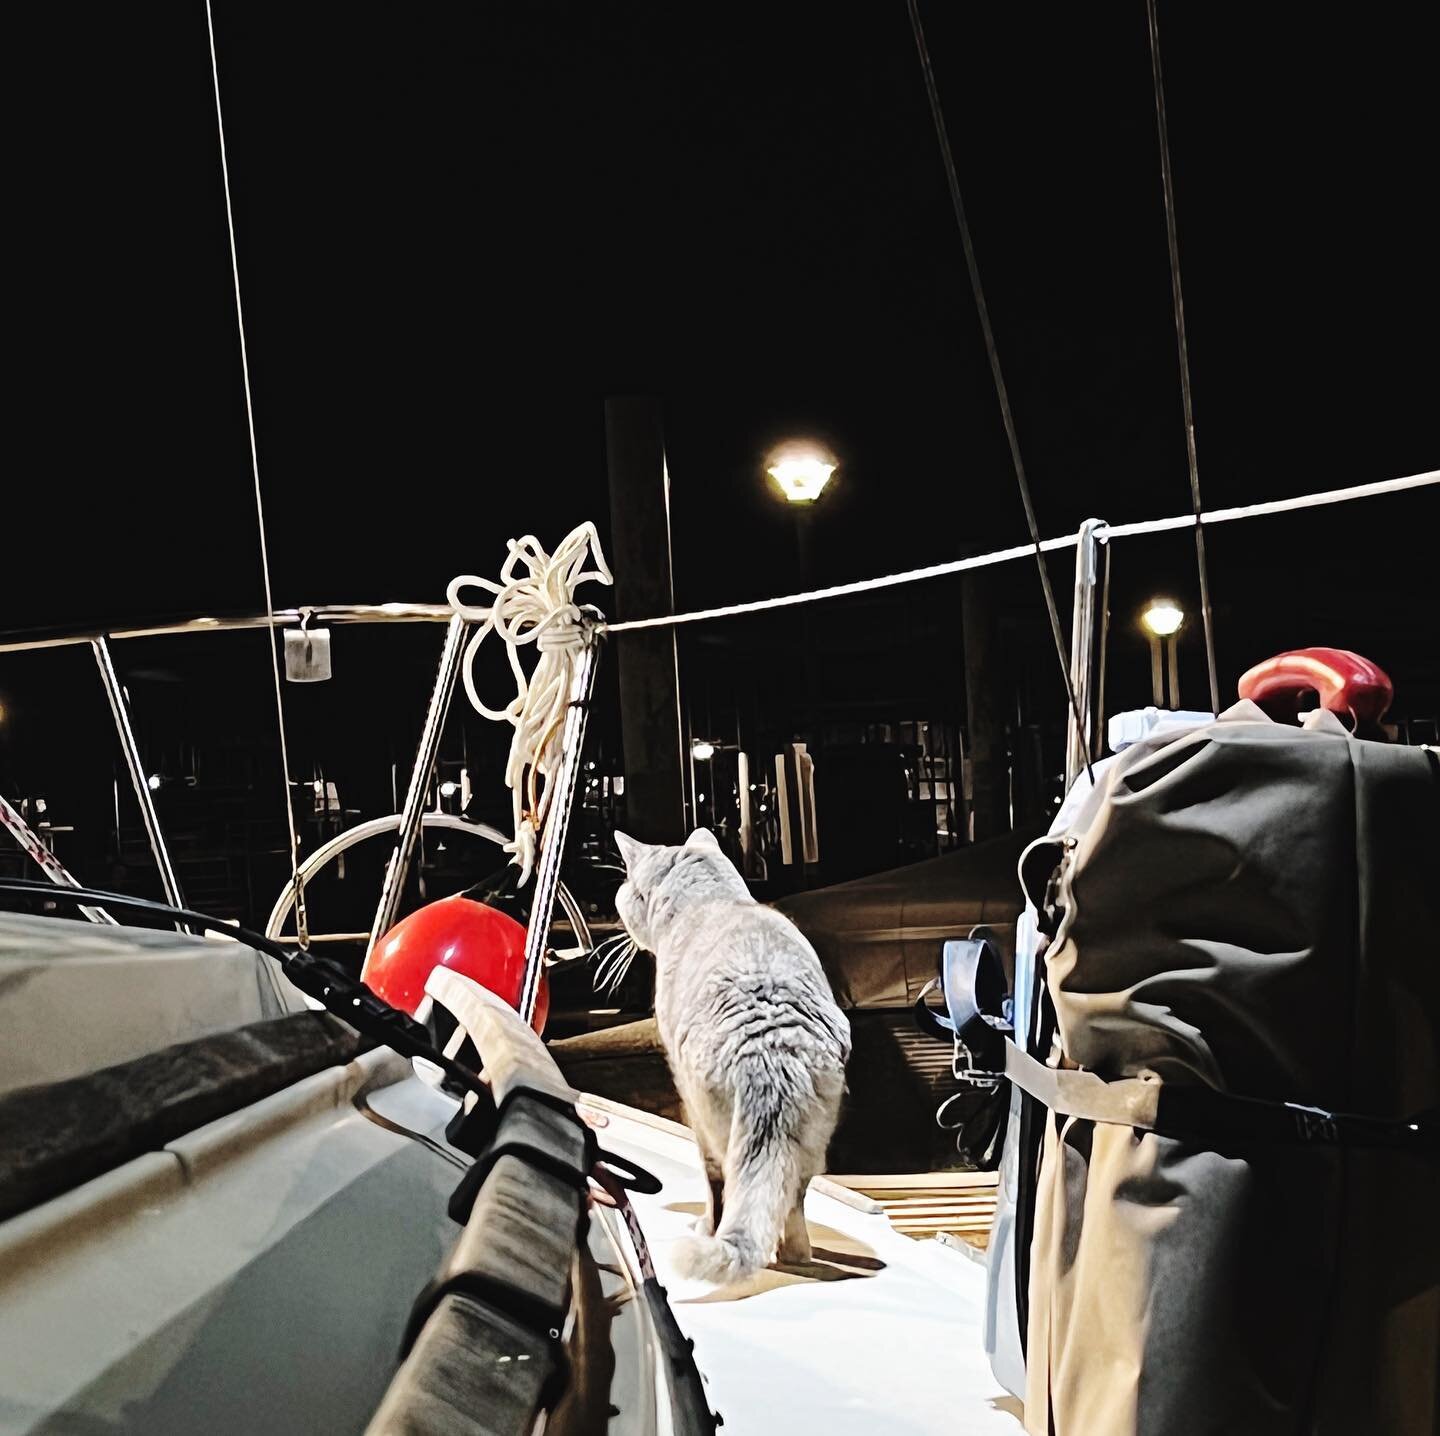 nightly boat check #guarddog